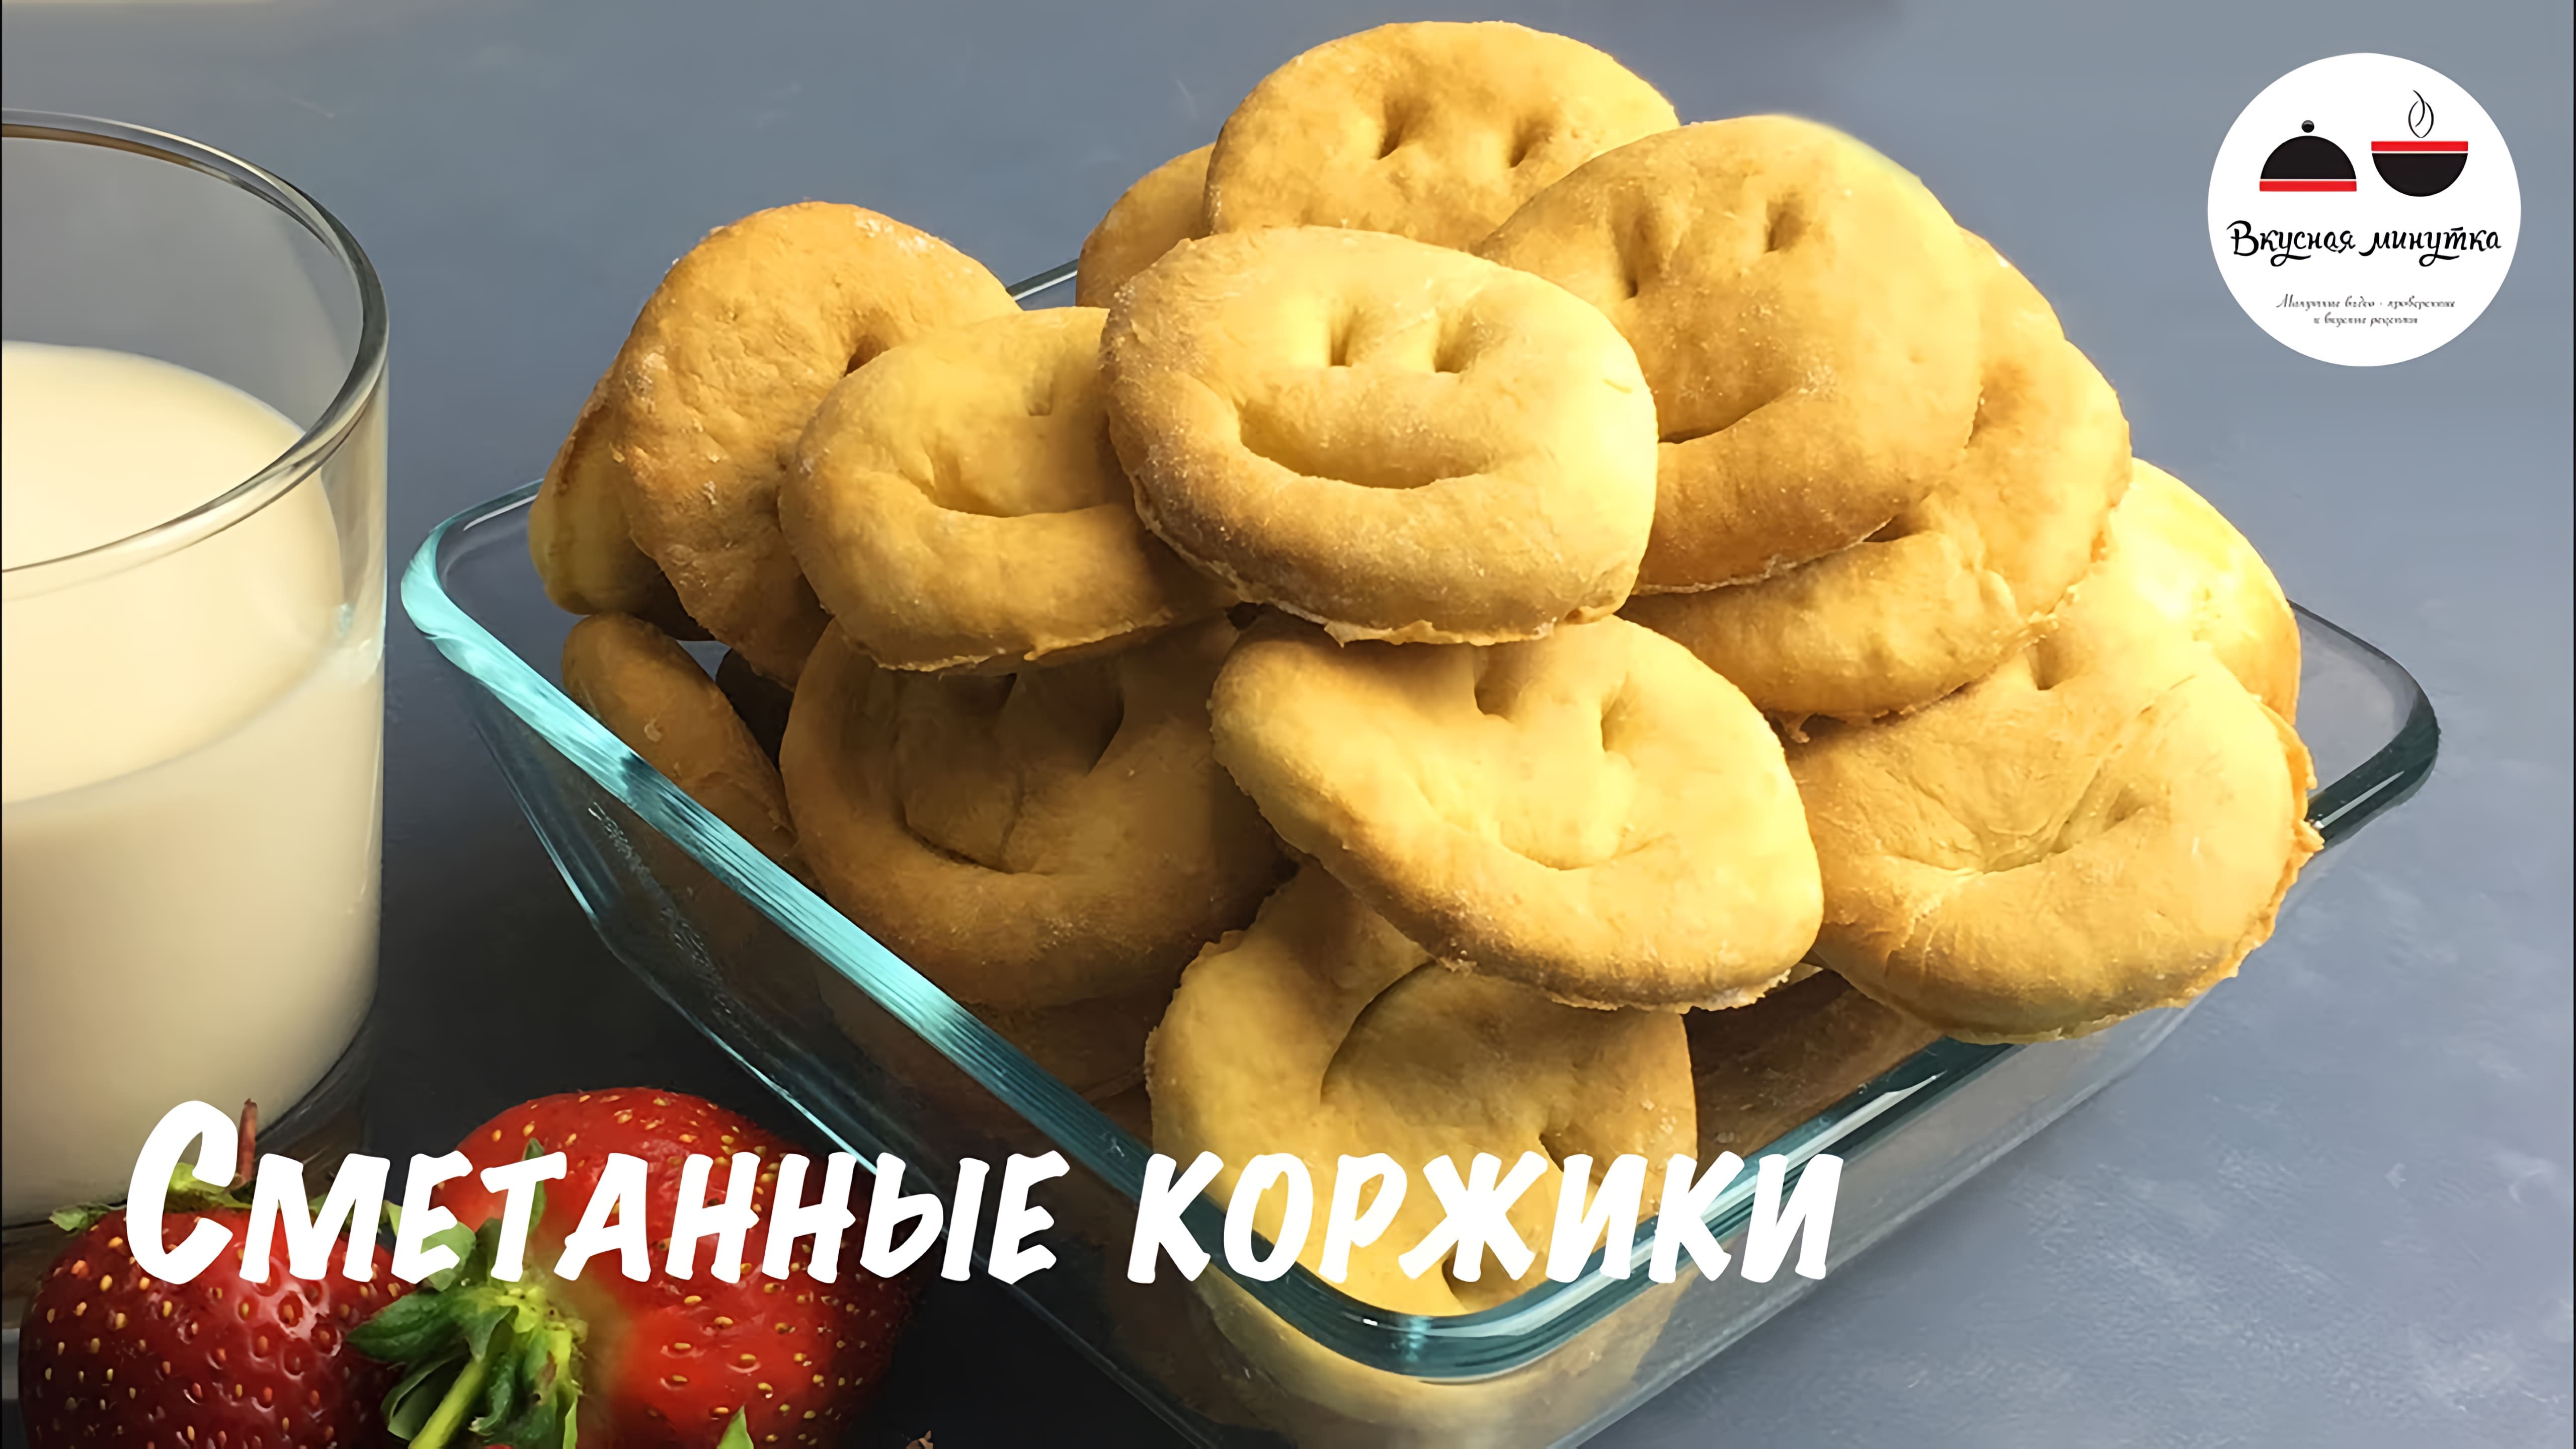 Видео: Сметанные коржики  Быстрый рецепт печенья для детей  Печенье на сметане  Cookies with sour cream